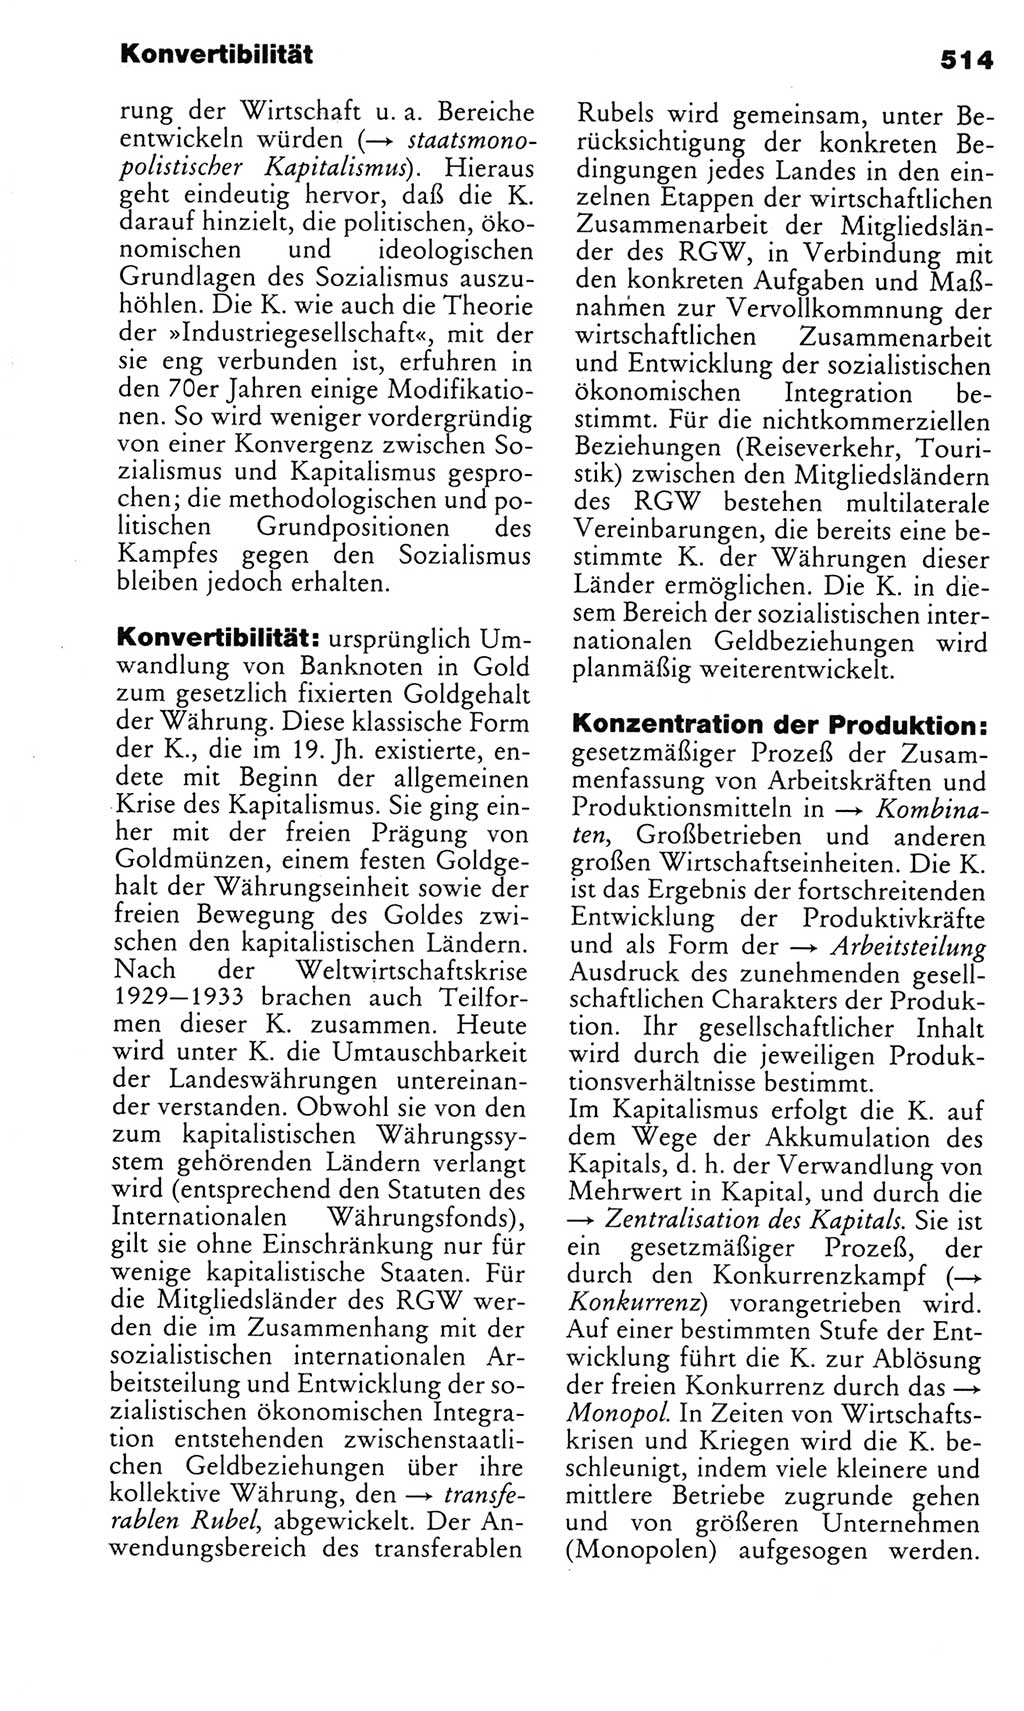 Kleines politisches Wörterbuch [Deutsche Demokratische Republik (DDR)] 1983, Seite 514 (Kl. pol. Wb. DDR 1983, S. 514)